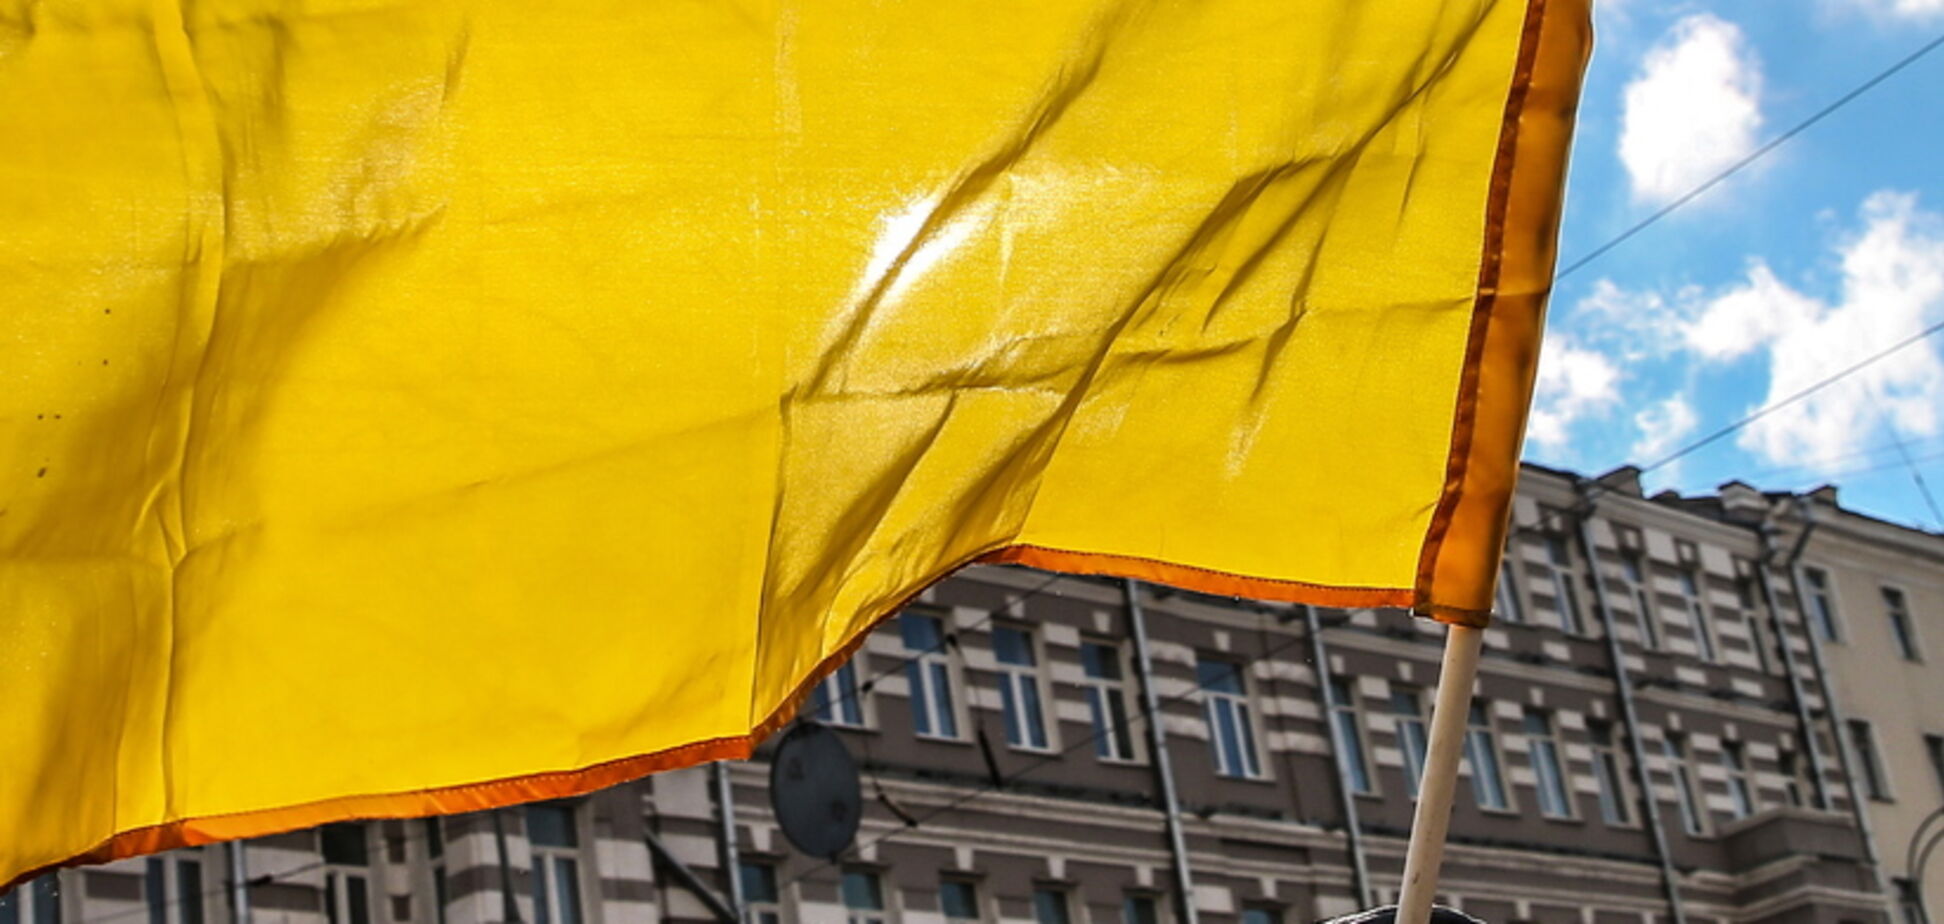 Всесвітній банк погіршив прогноз щодо України